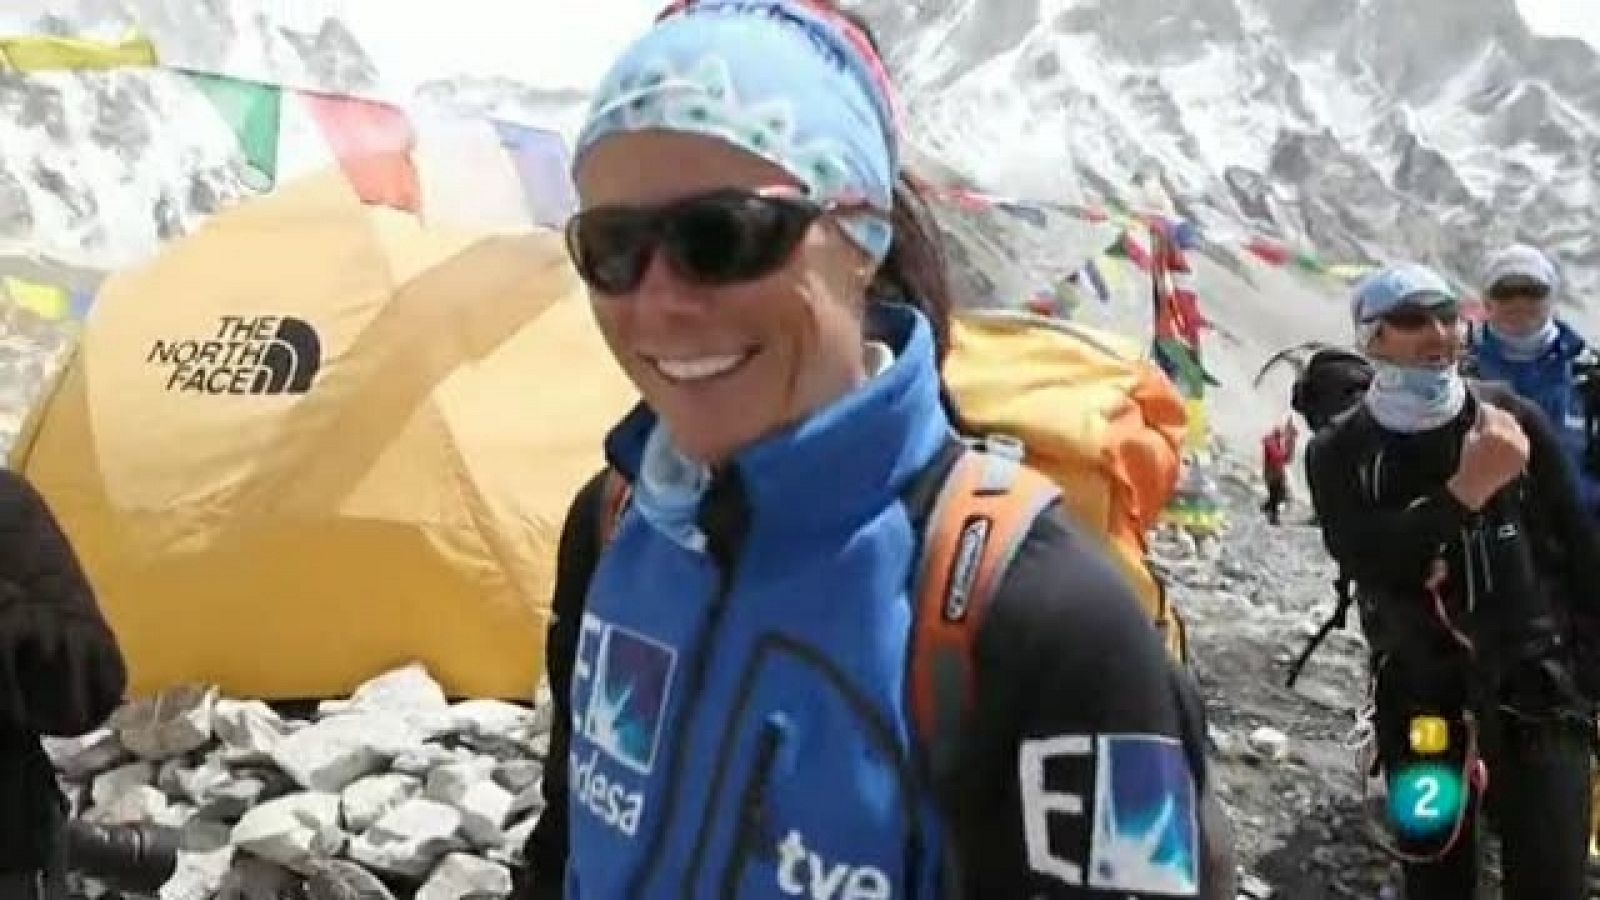 Desafío 14+1: Everest sin O2 (Edurne Pasabán) - Capítulo 8